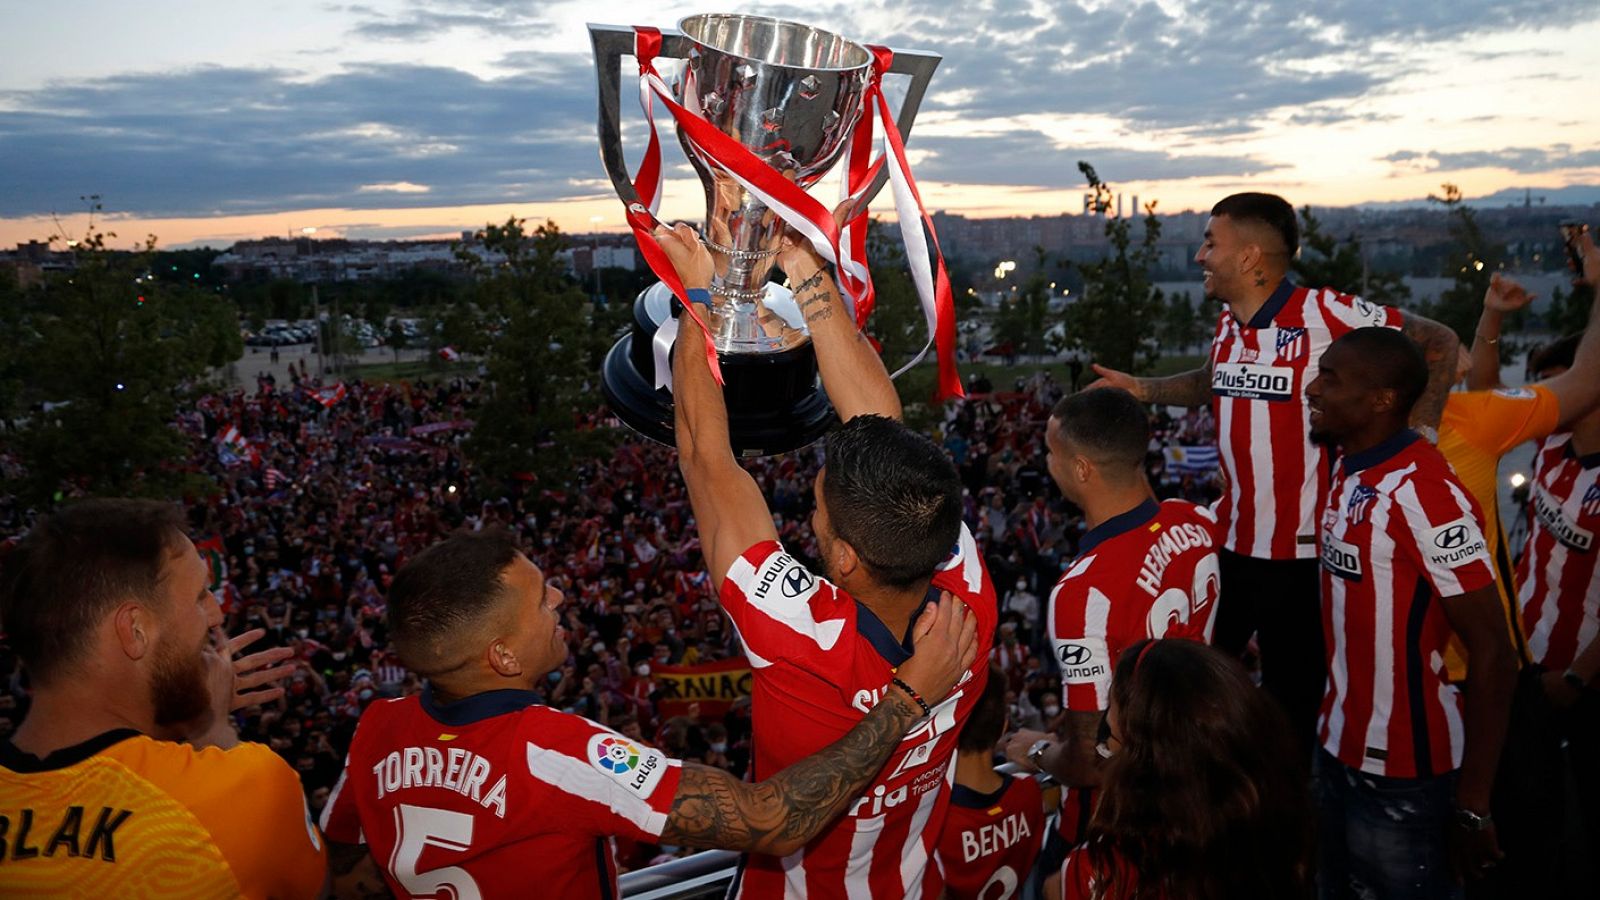 Cuándo el Atlético de Madrid ganó su última liga?